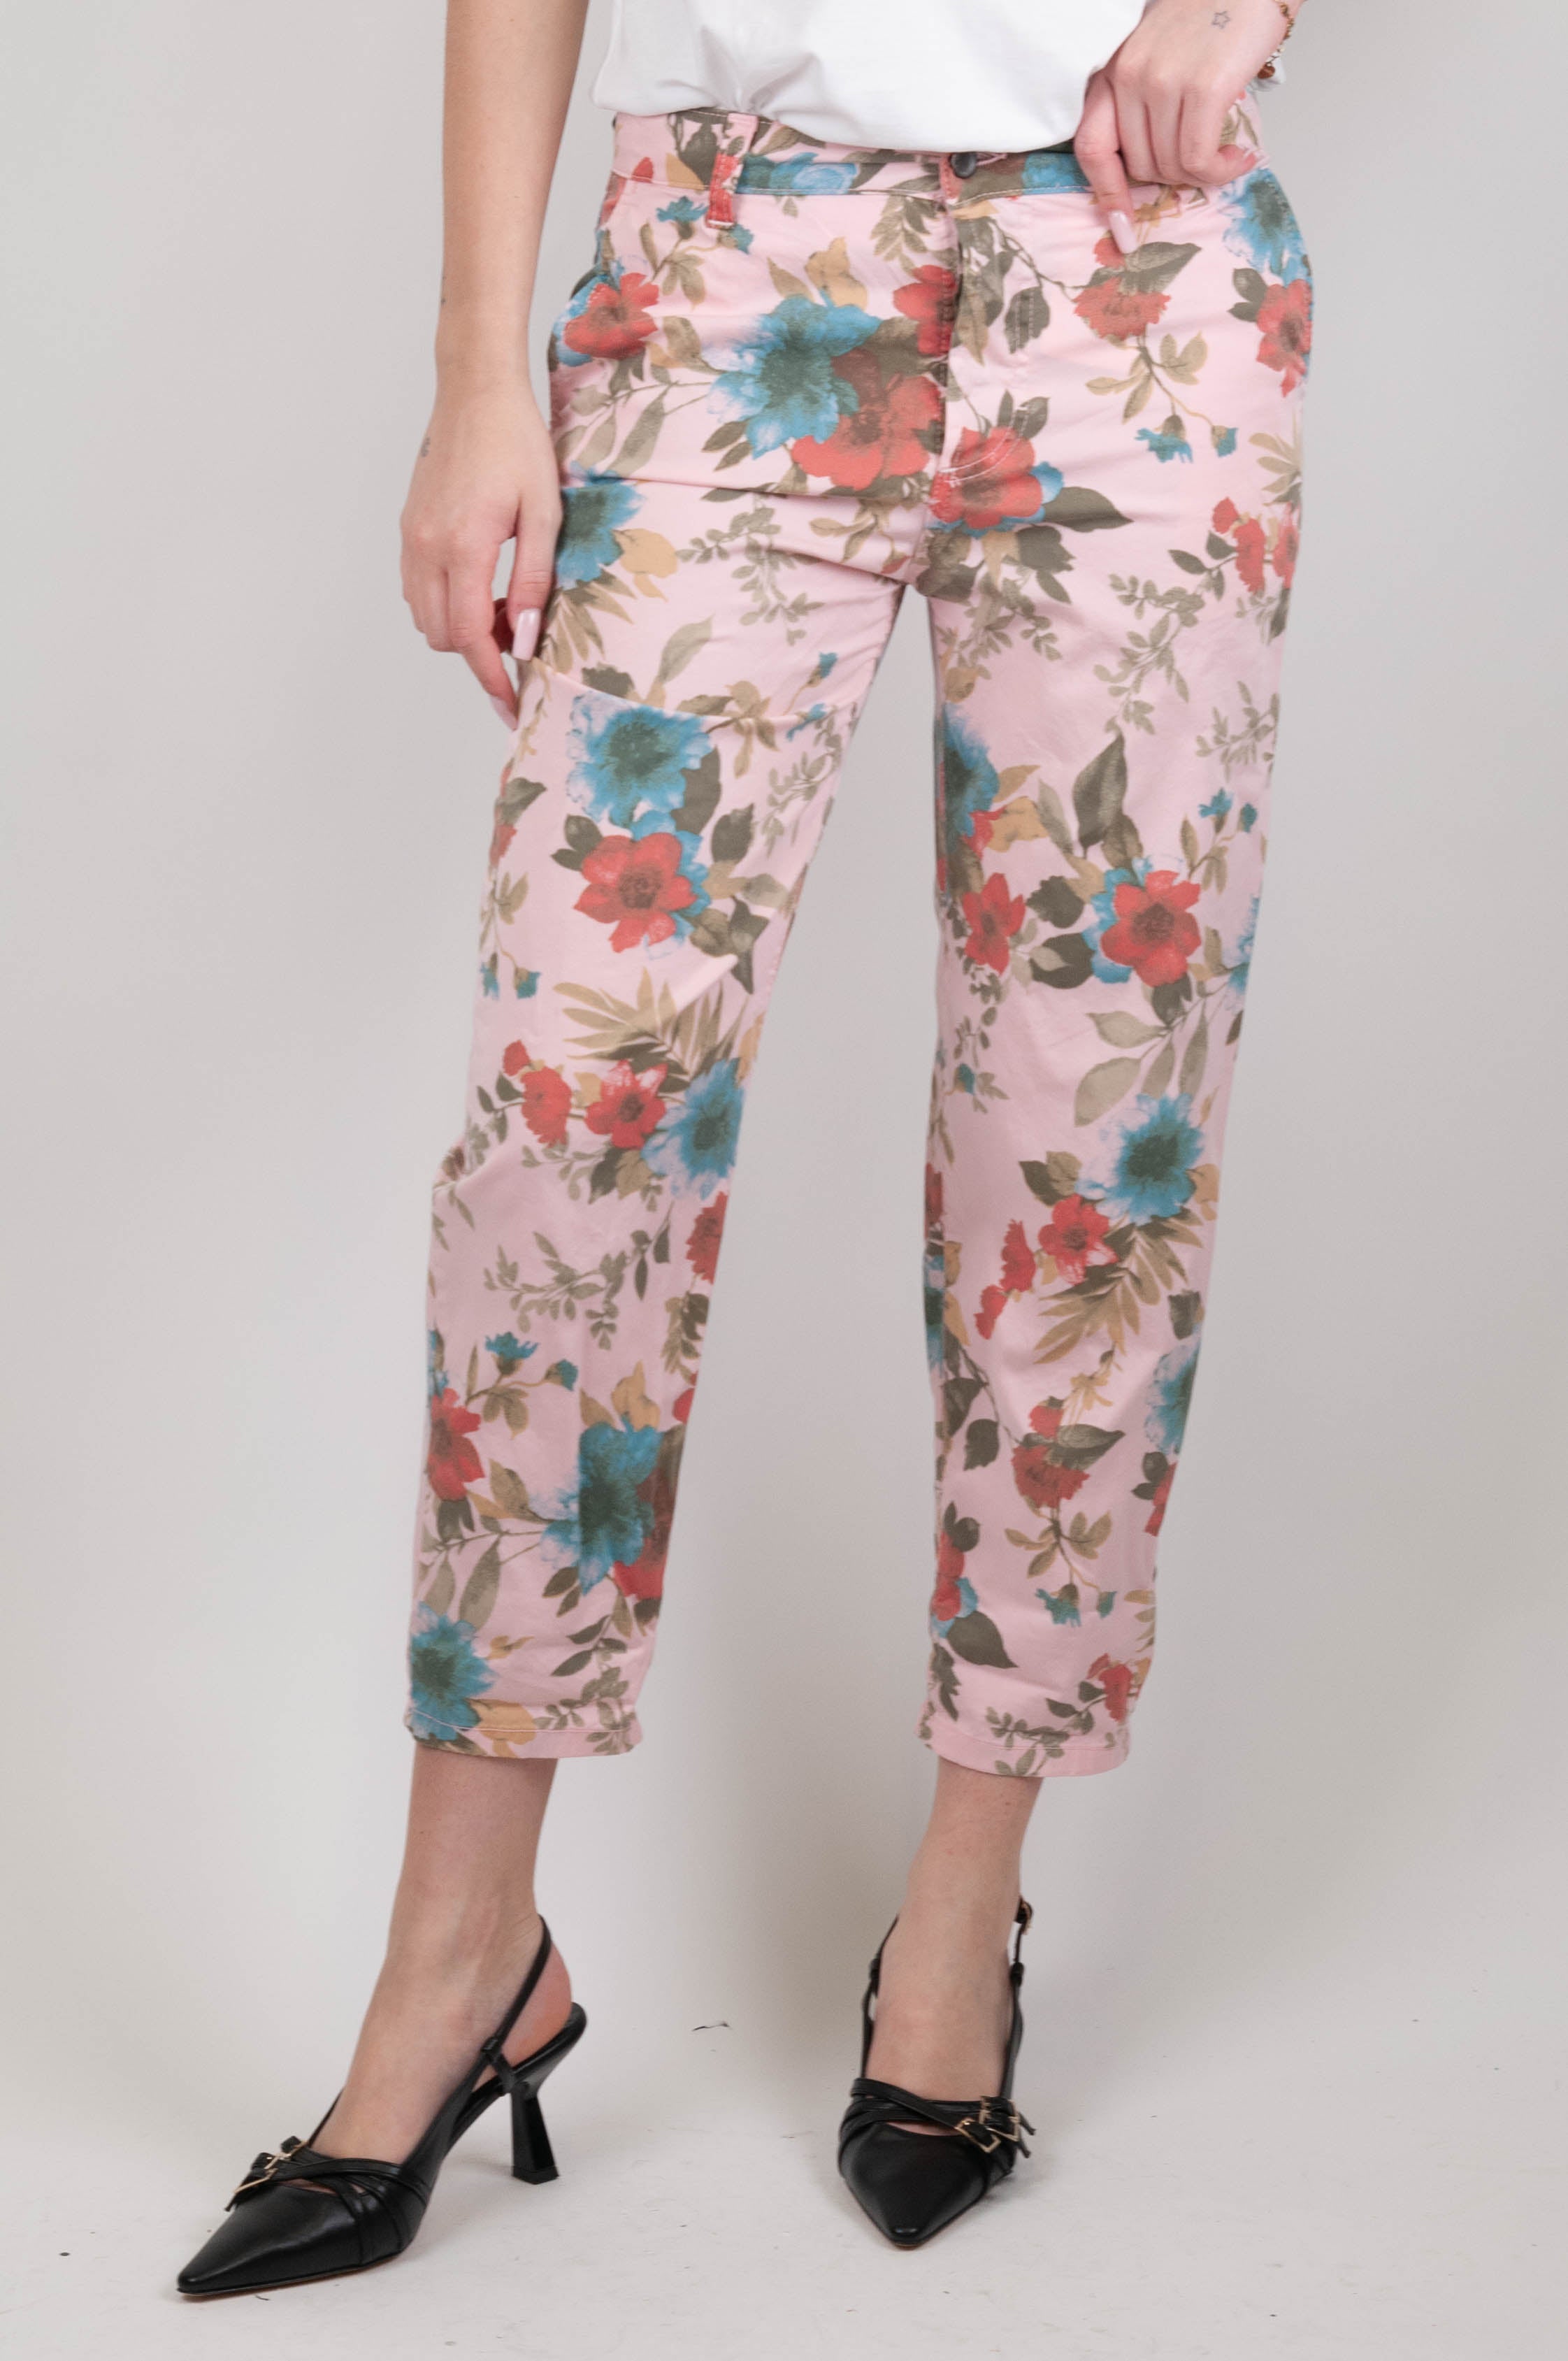 Souvenir - Floral patterned trousers